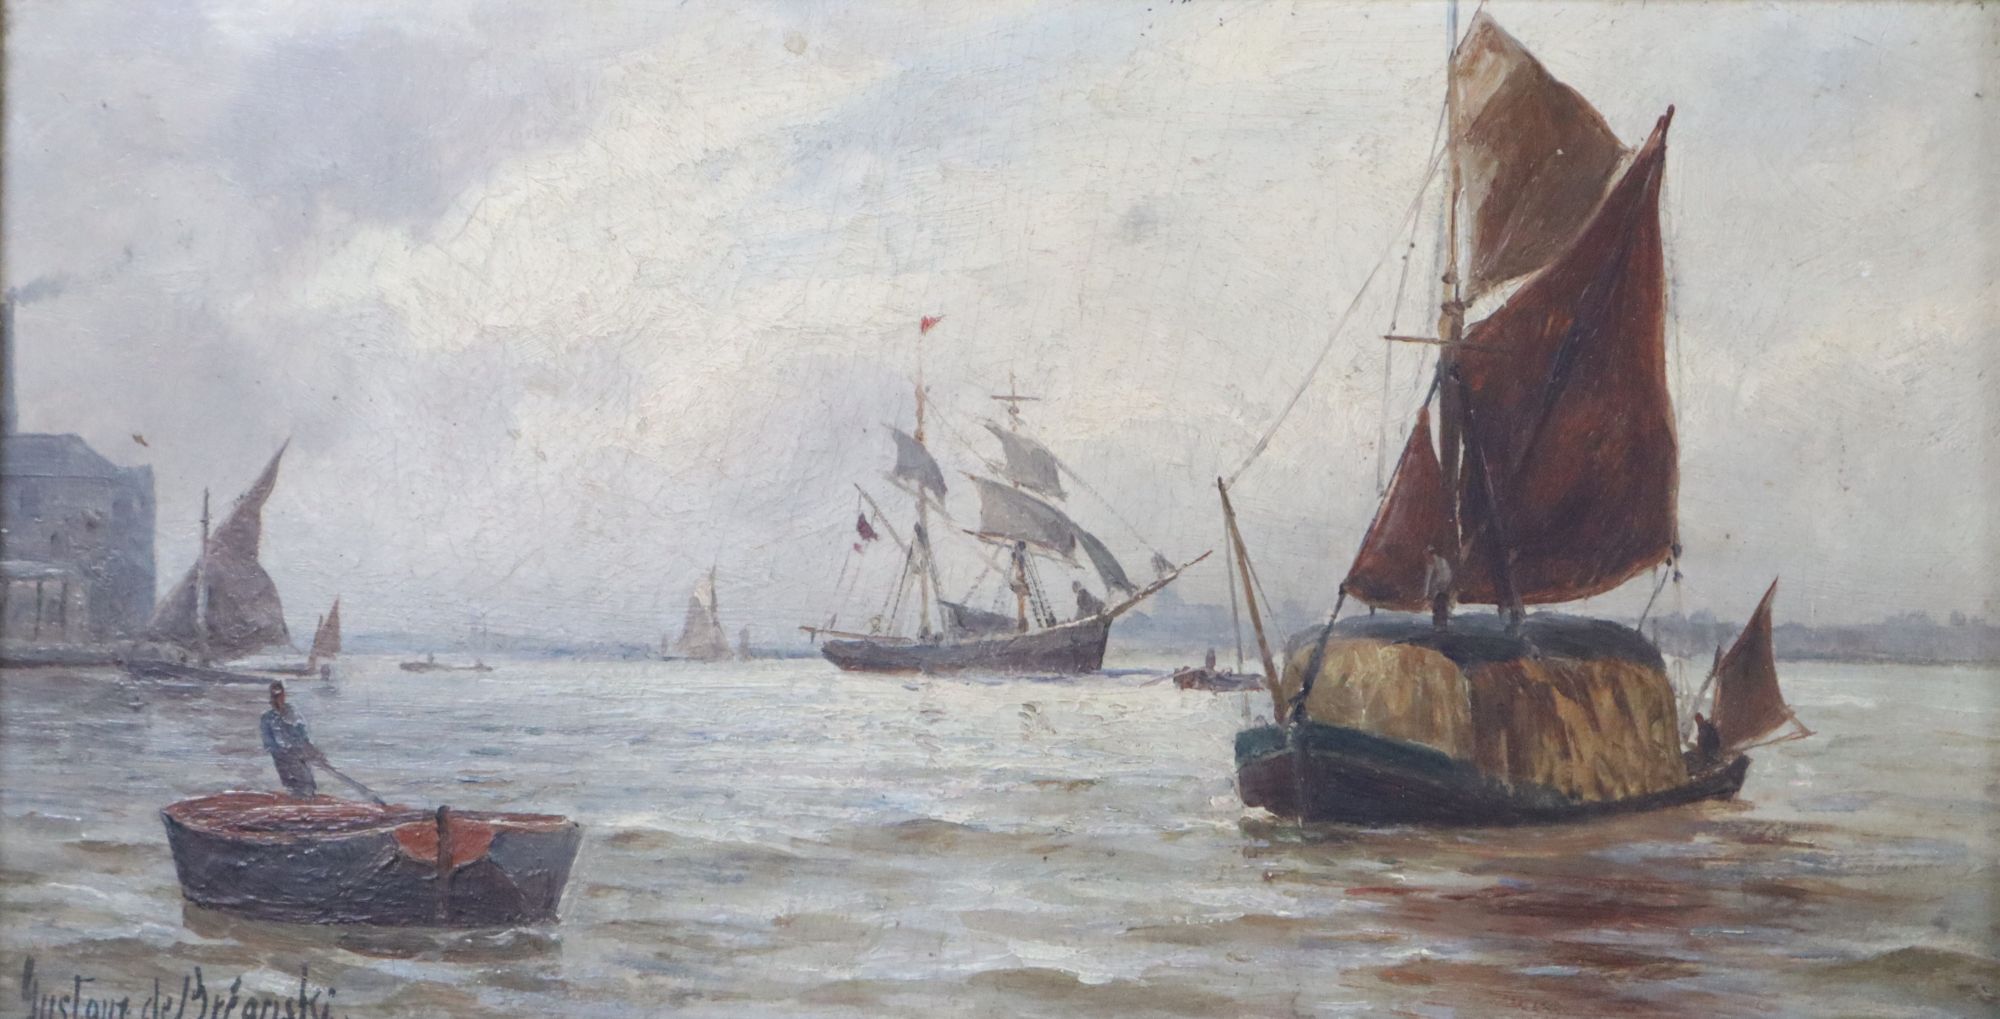 Gustav de Breanski (1856-1898), oil on board, Pool of London, signed, 15 x 29cm